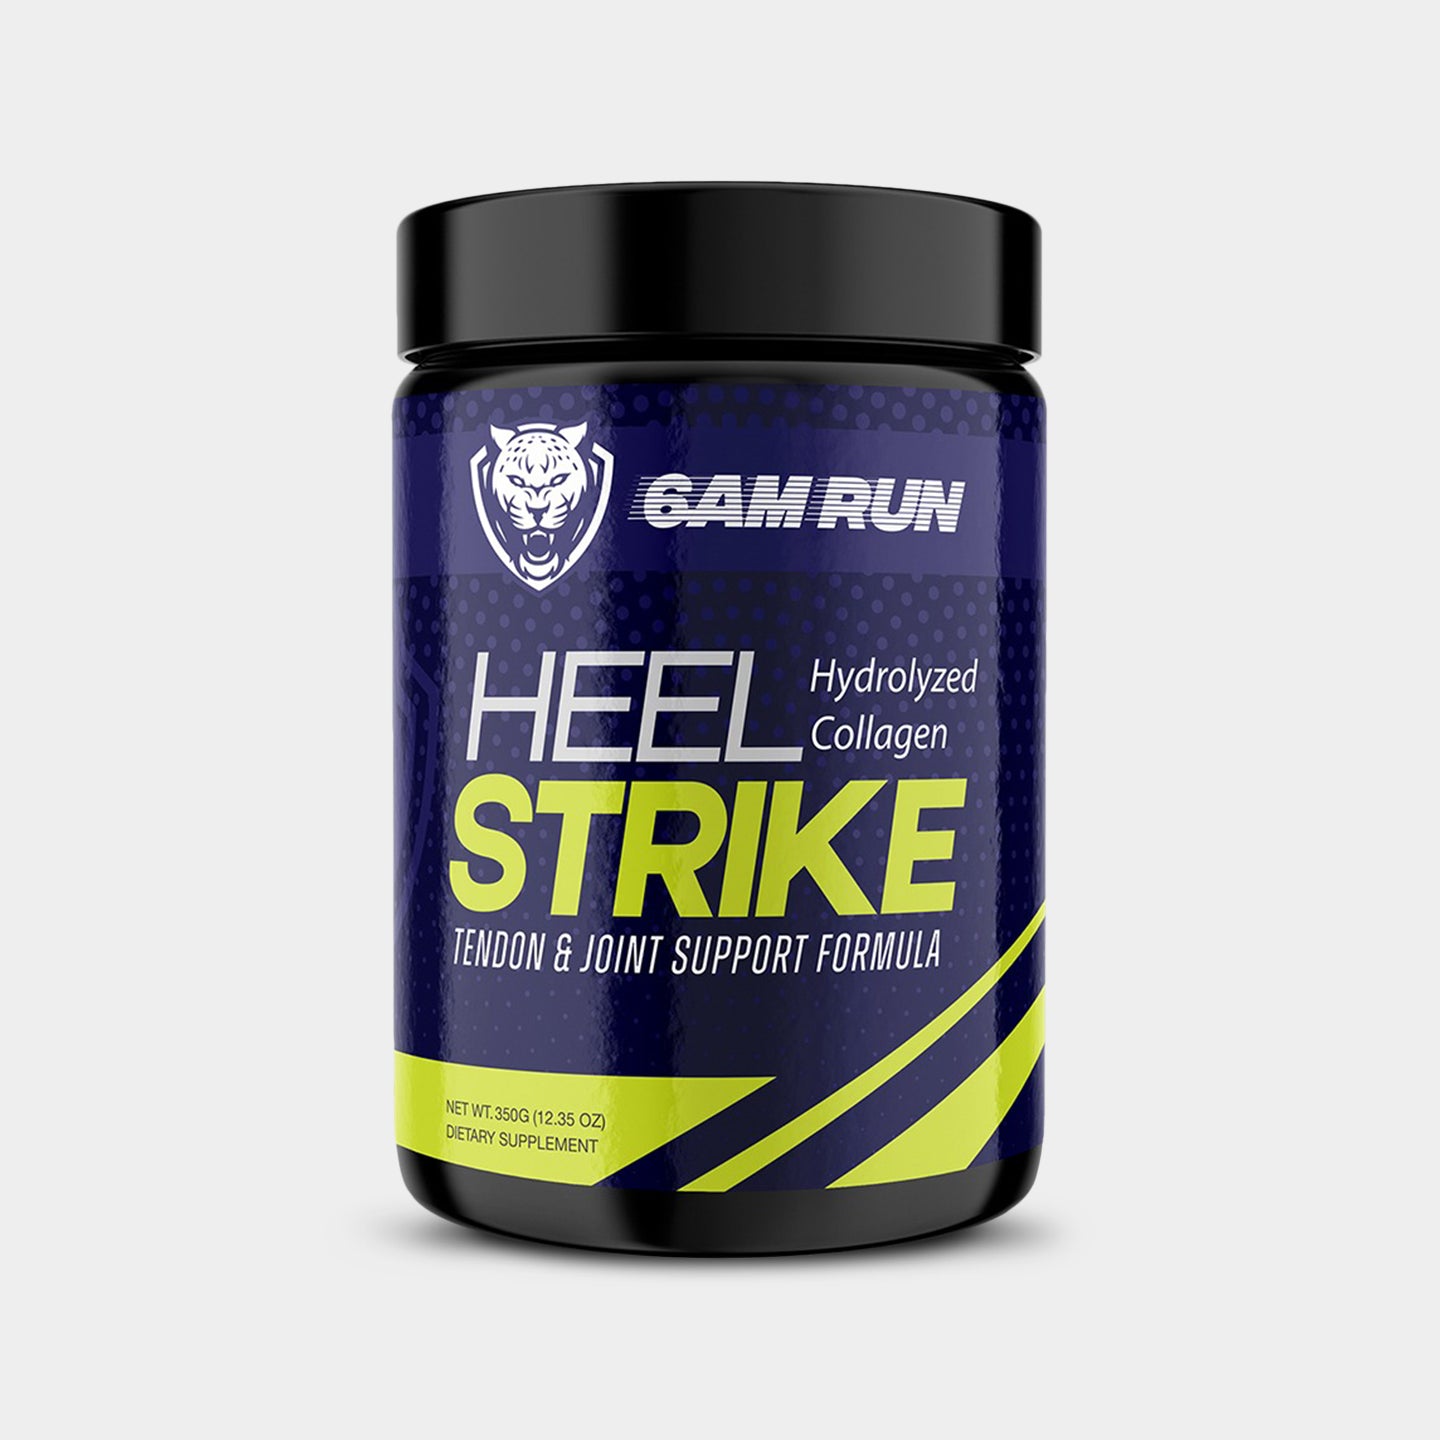 6AM Run Heel Strike (Hydrolized Collagen) Main